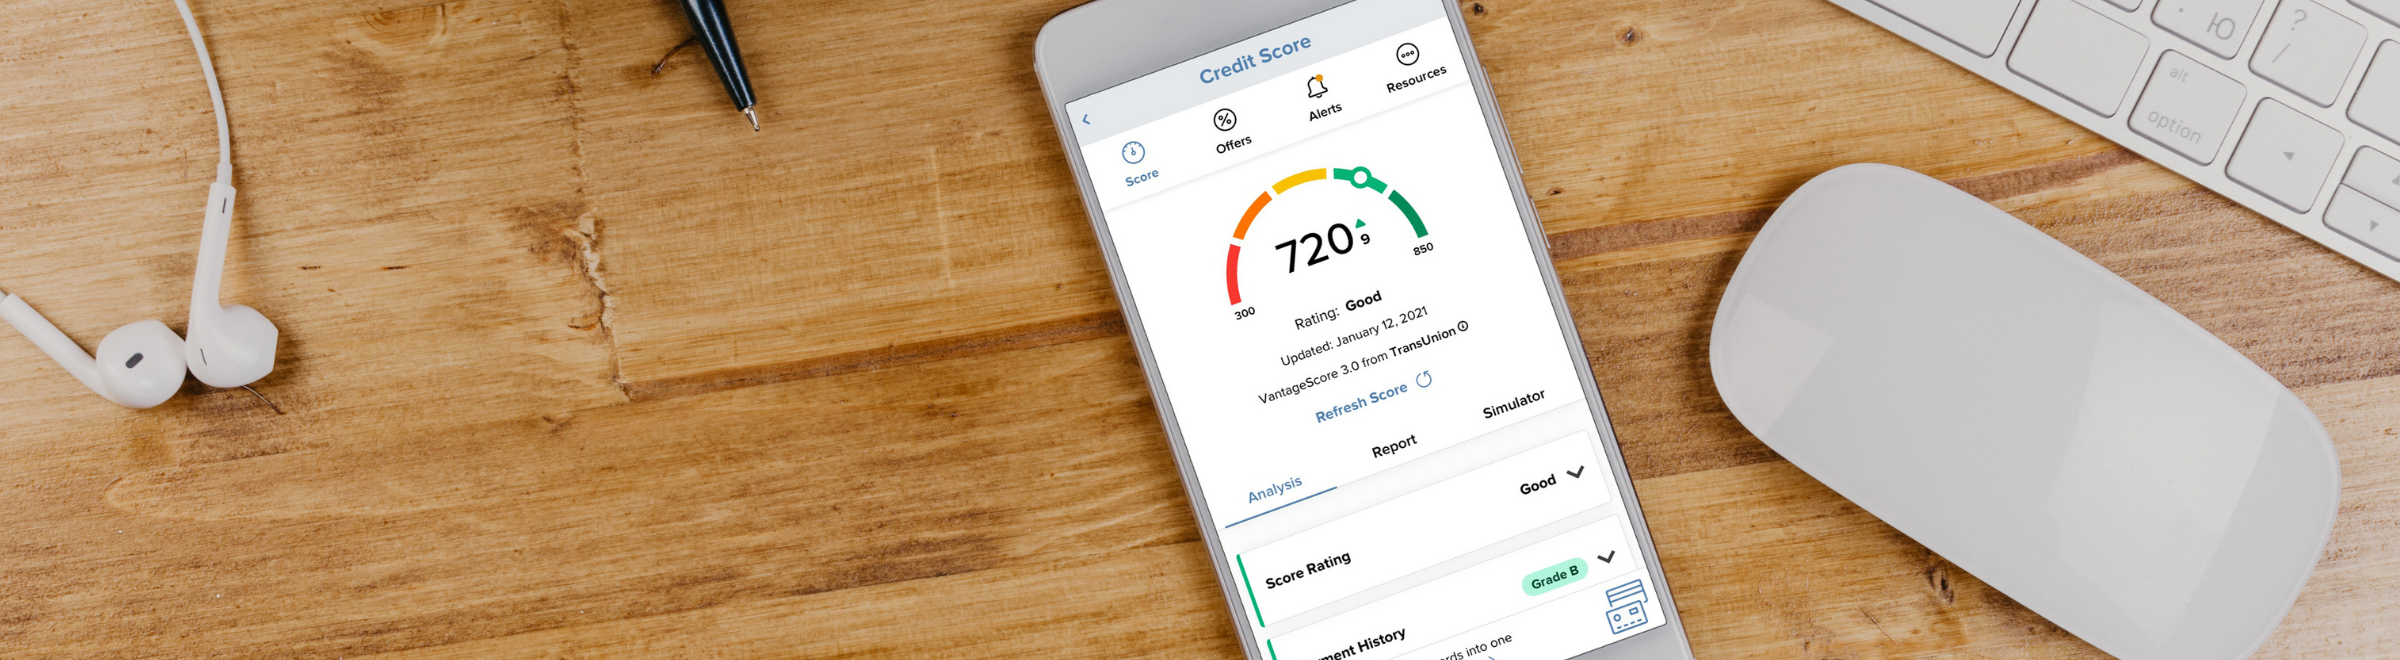 smartphone on wood grain desktop showing credit score